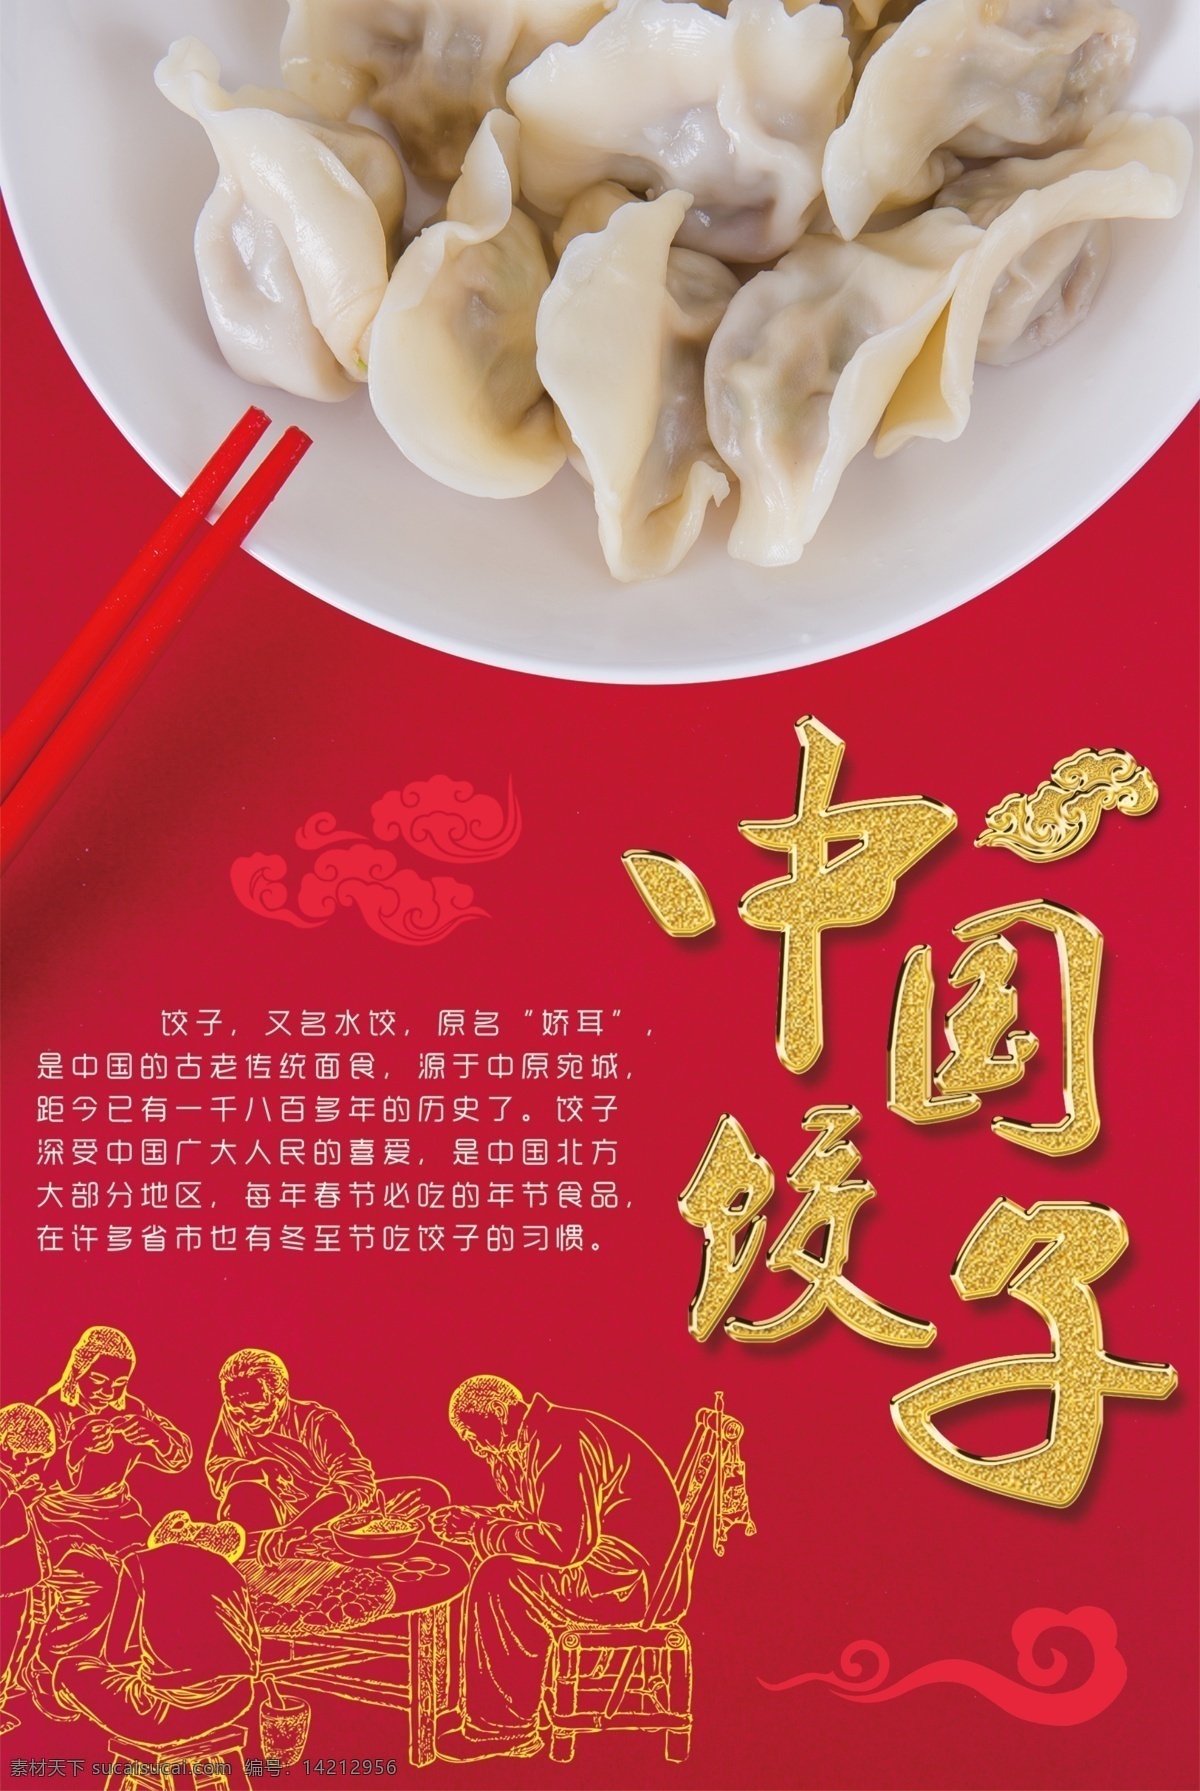 中国 饺子 美食 海报 好吃不过饺子 水饺 蒸饺 中国美食 传承特色